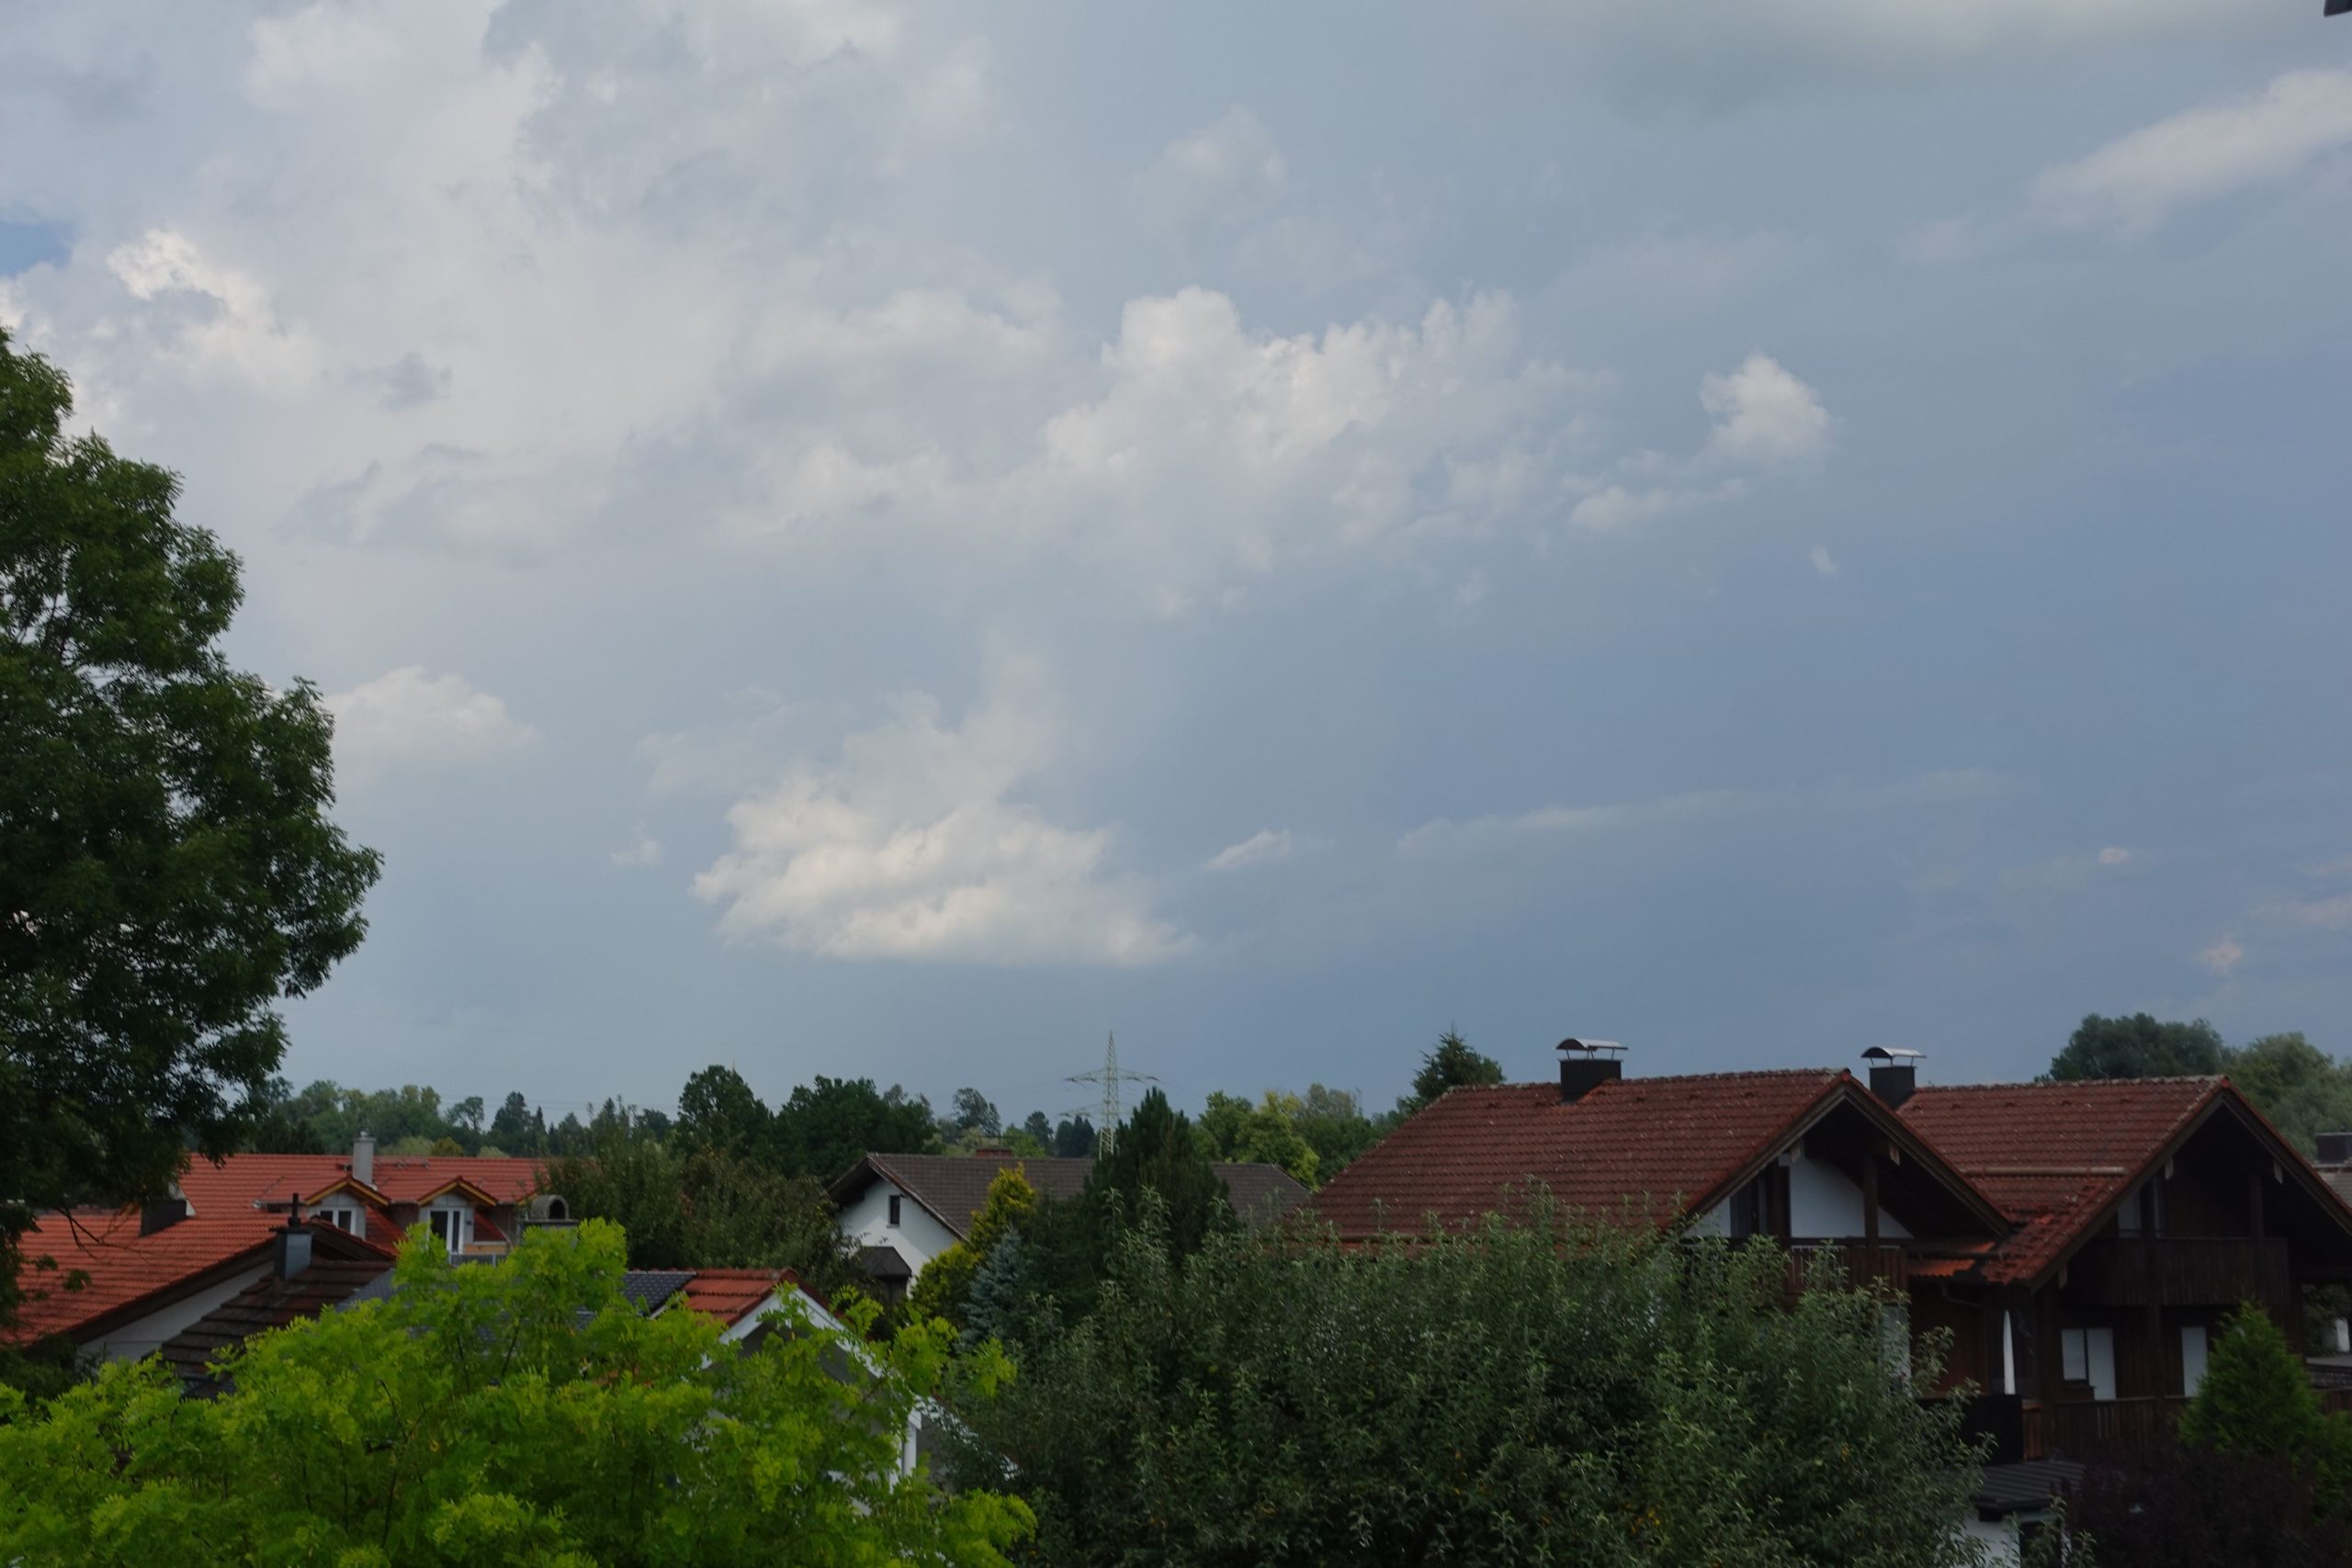 Gewitterwolken über Rosenheim. Foto: Innpuls.me